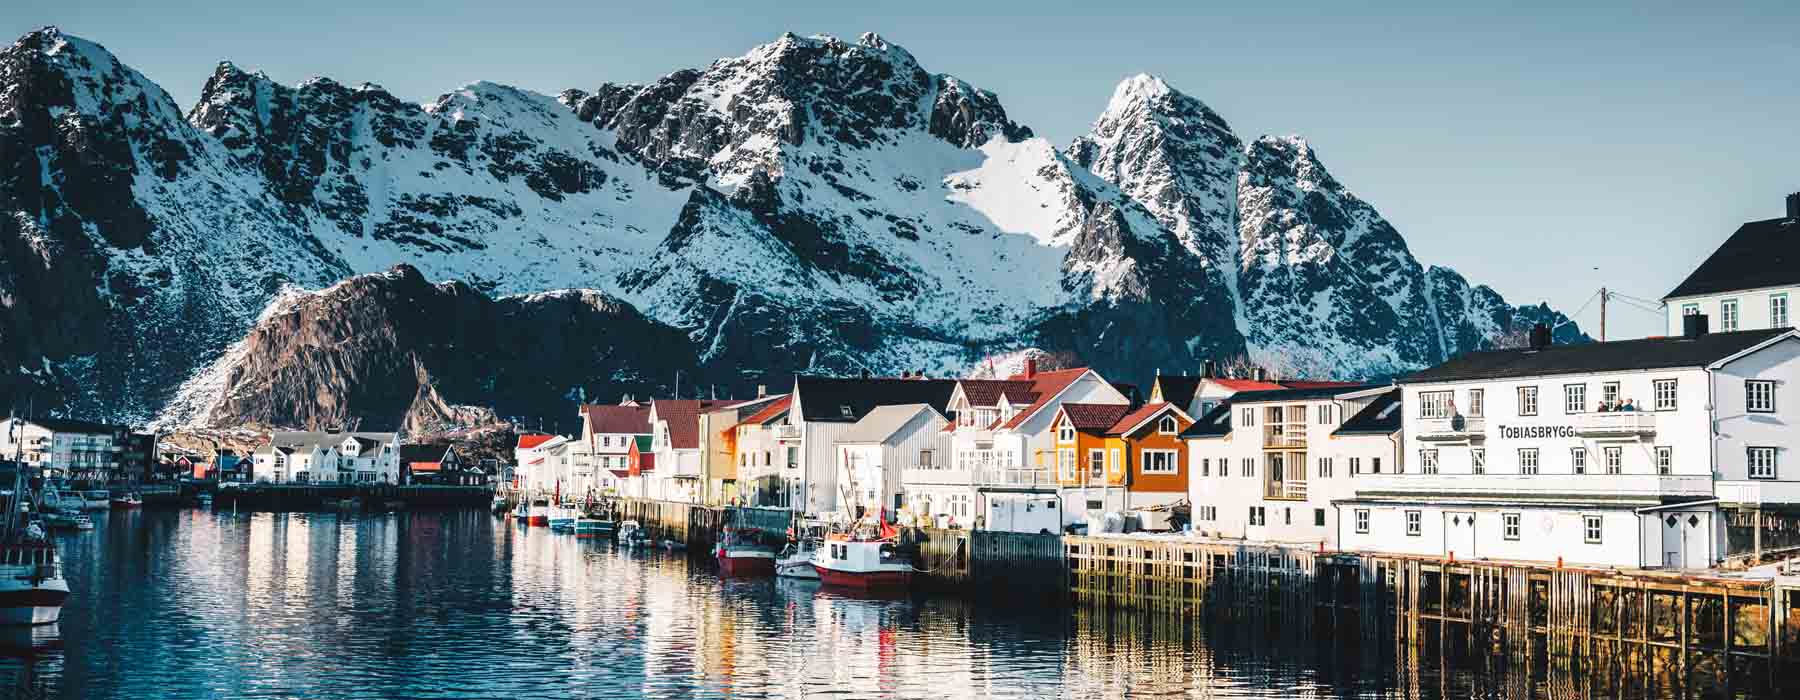 Norway<br class="hidden-md hidden-lg" /> Winter Holidays